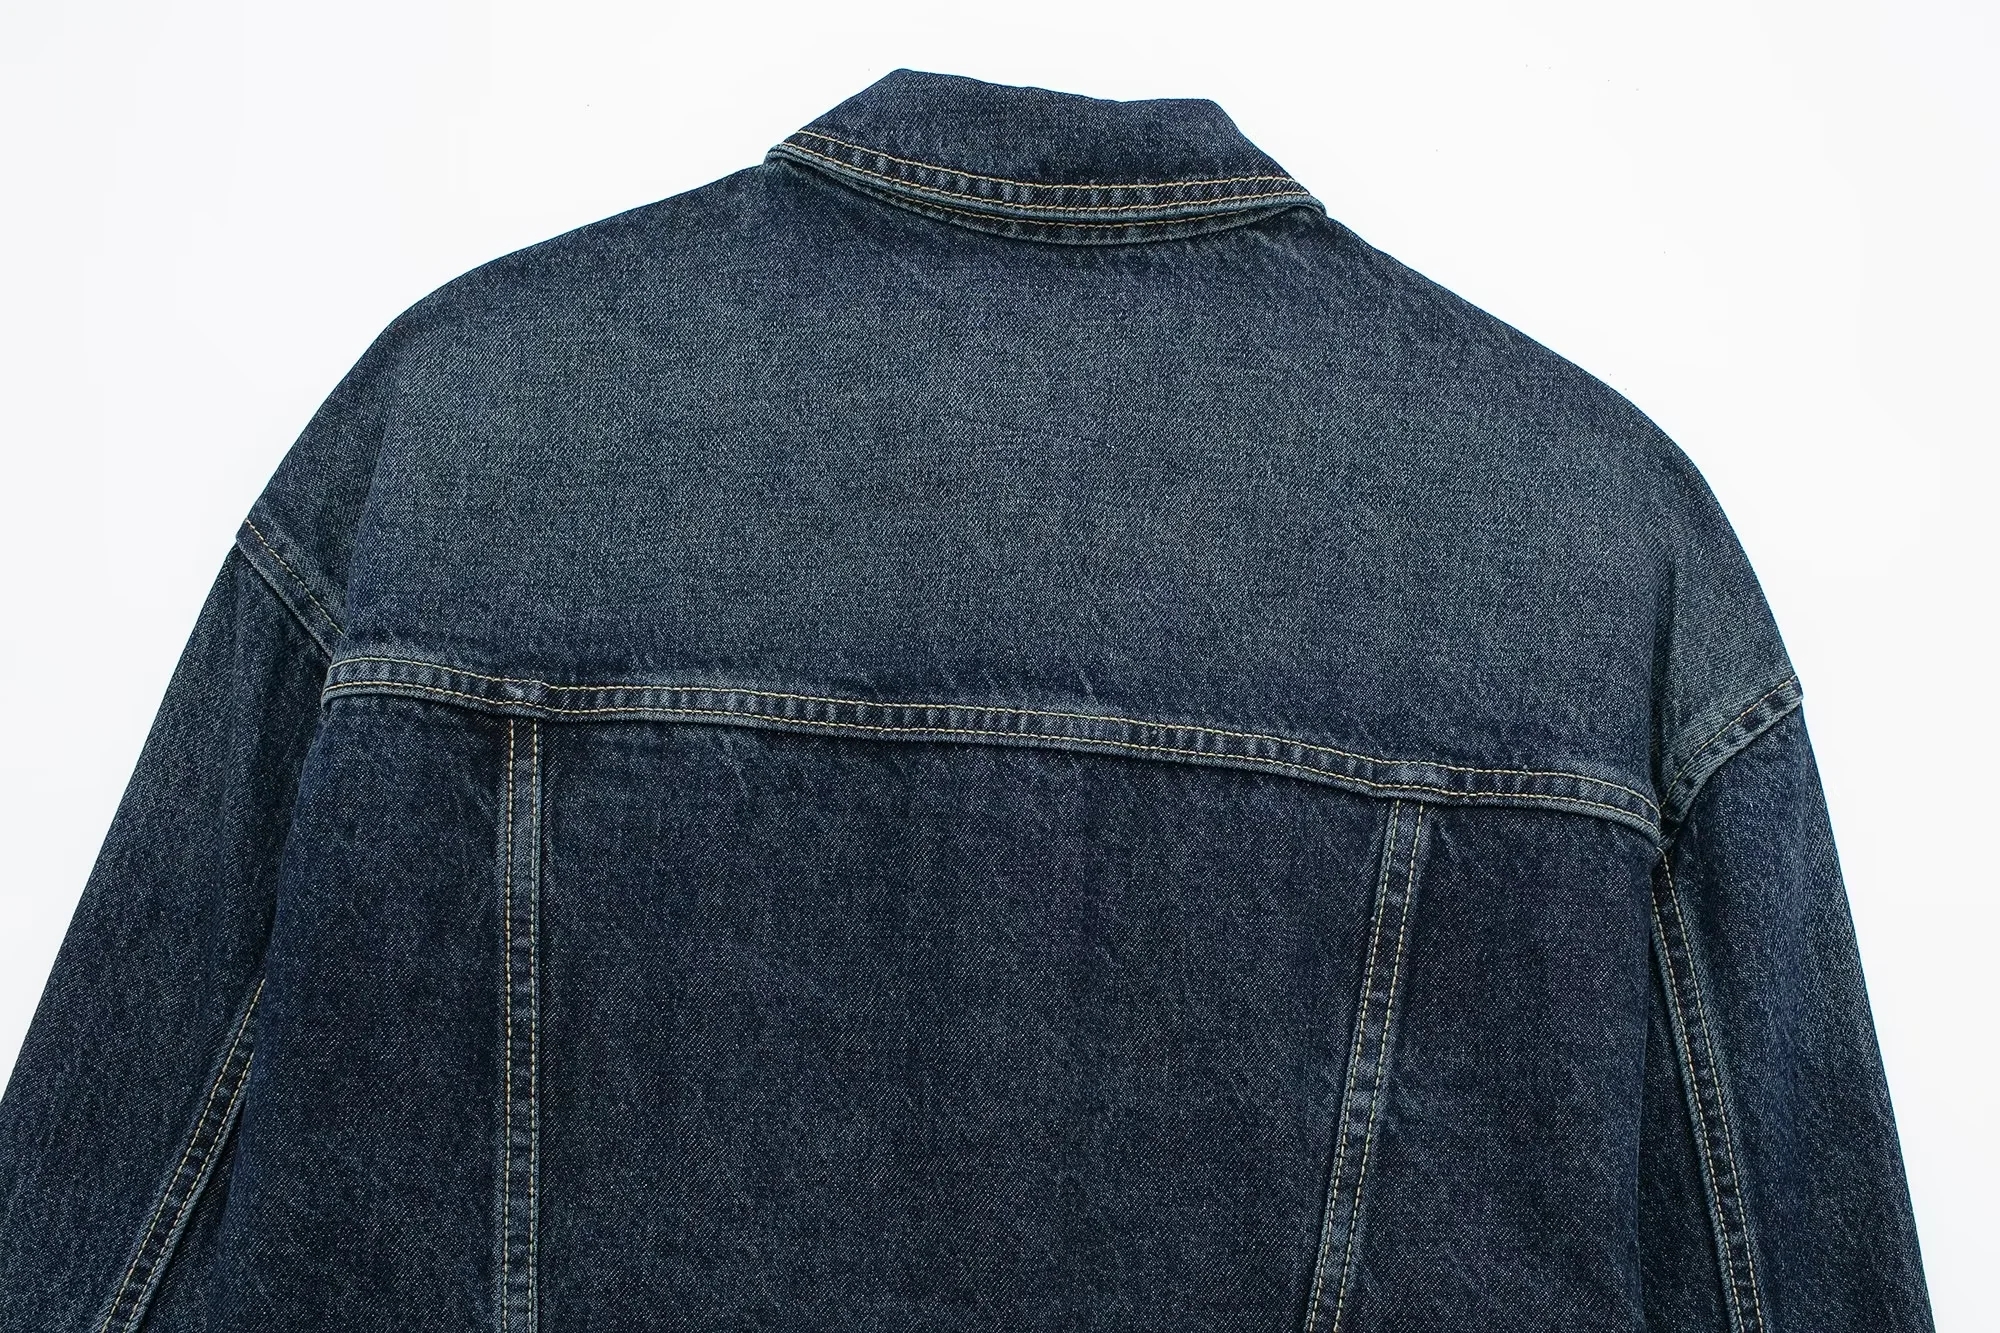 Fashion Blue Denim Lapel Buttoned Jacket,Denim